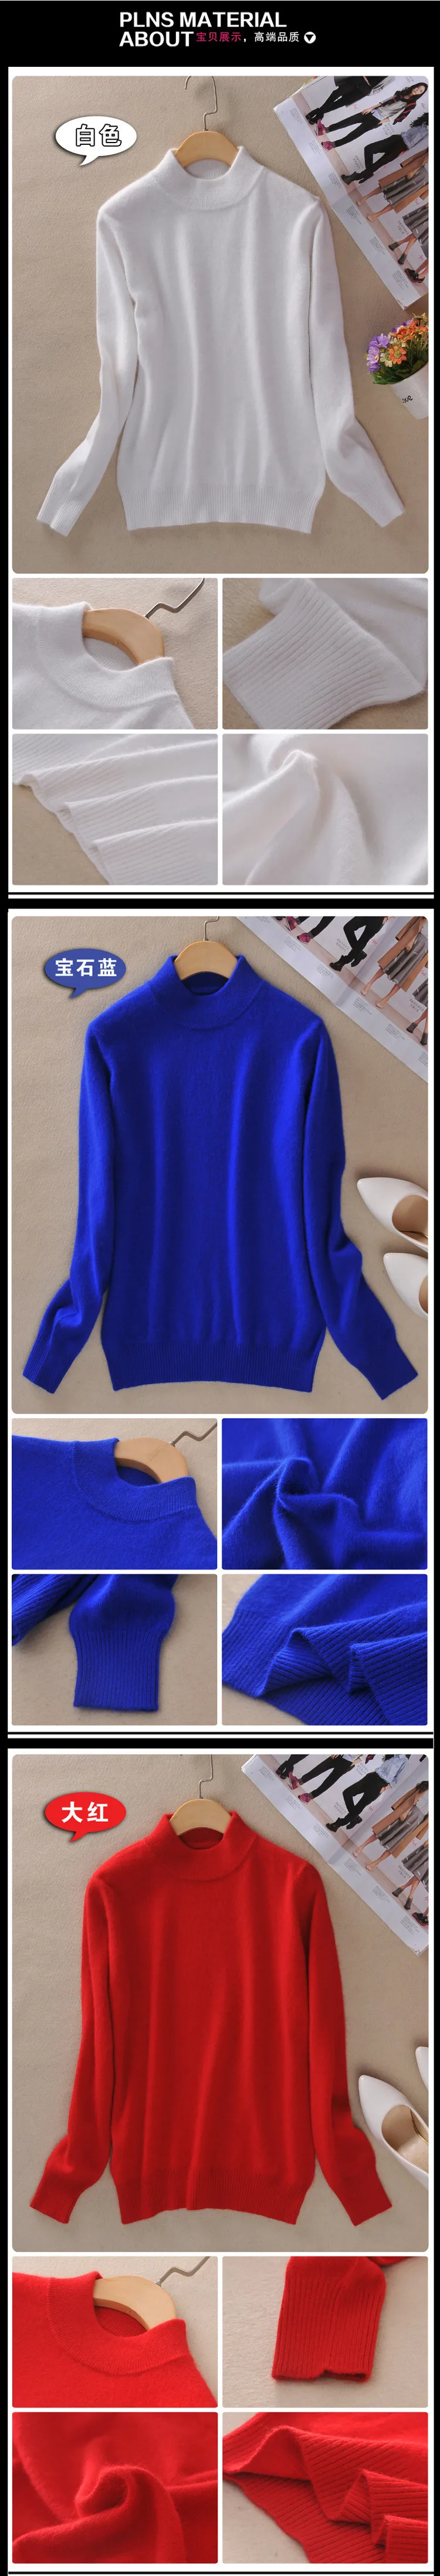 Aprmhisy размера плюс 3XL кашемировый женский свитер осень зима мягкий теплый вязаный кашемировый пуловер Джемпер